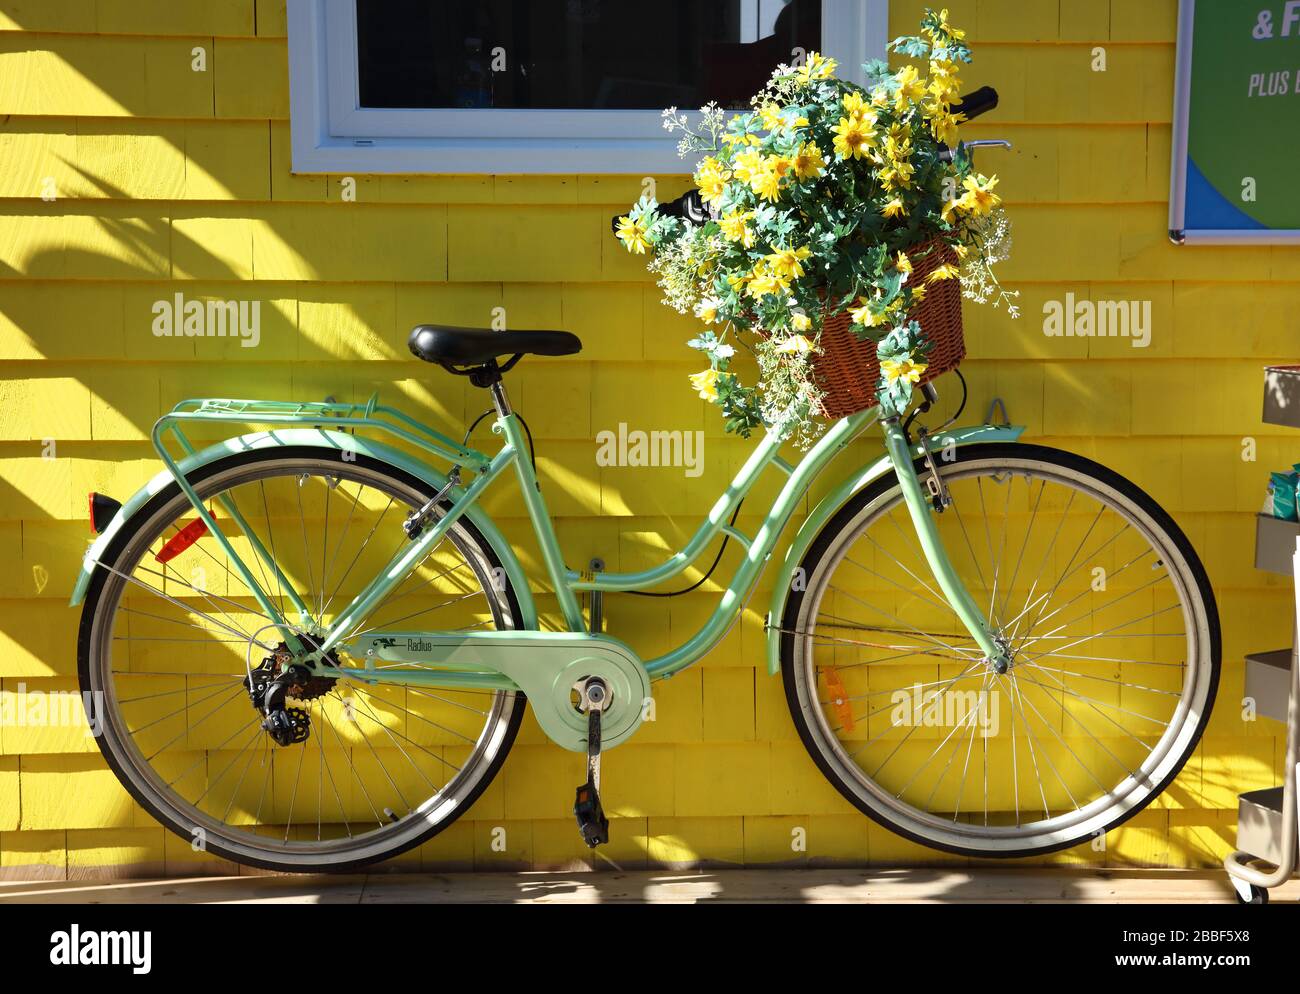 Bicicleta verde pálido con cesta de flores en su manillar frente al revestimiento amarillo de una tienda de alquiler de bicicletas 'I Bike Sydney', Sydney, Cape Breton, Nueva Escocia, Canadá Foto de stock